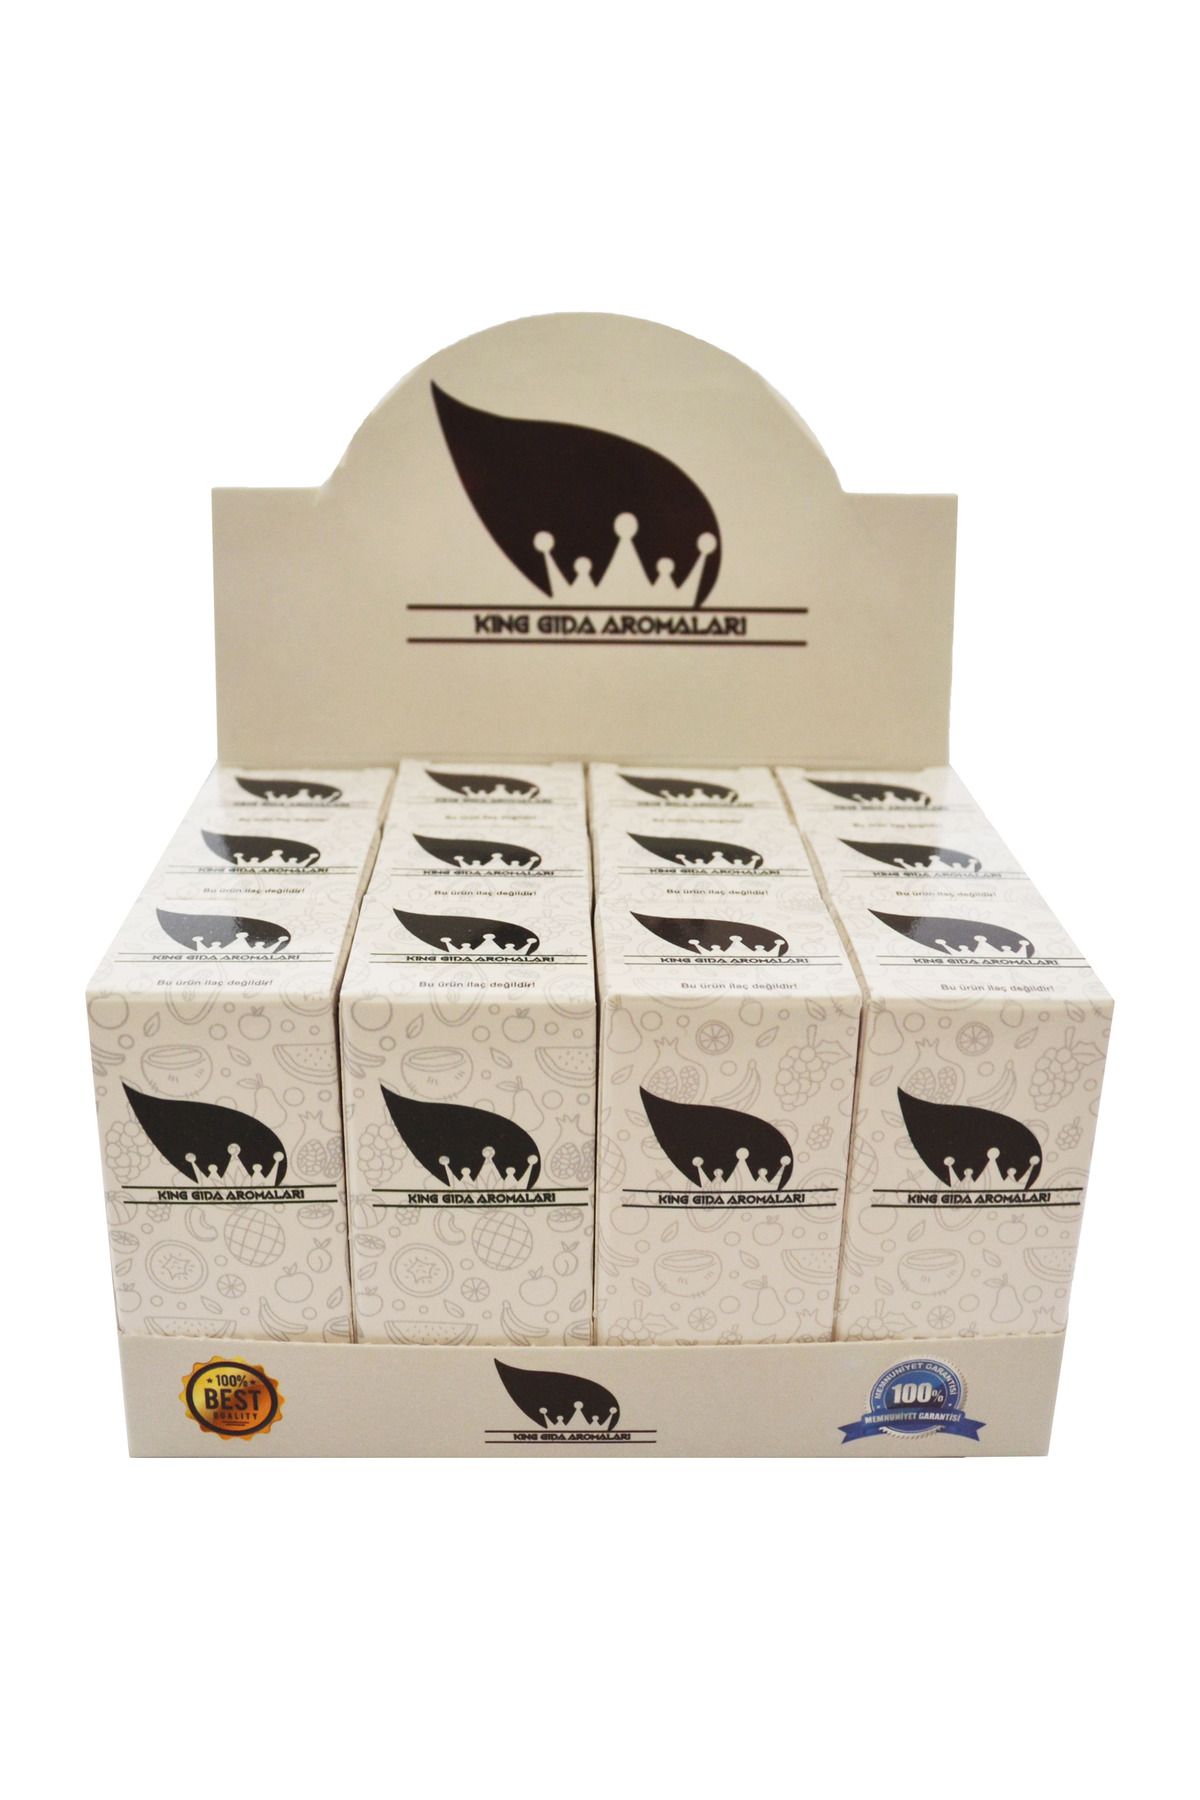 King Gıda Aromaları 12'li Kit Standı KA058 Siparişten Sonra Ürünleri Belirtiniz